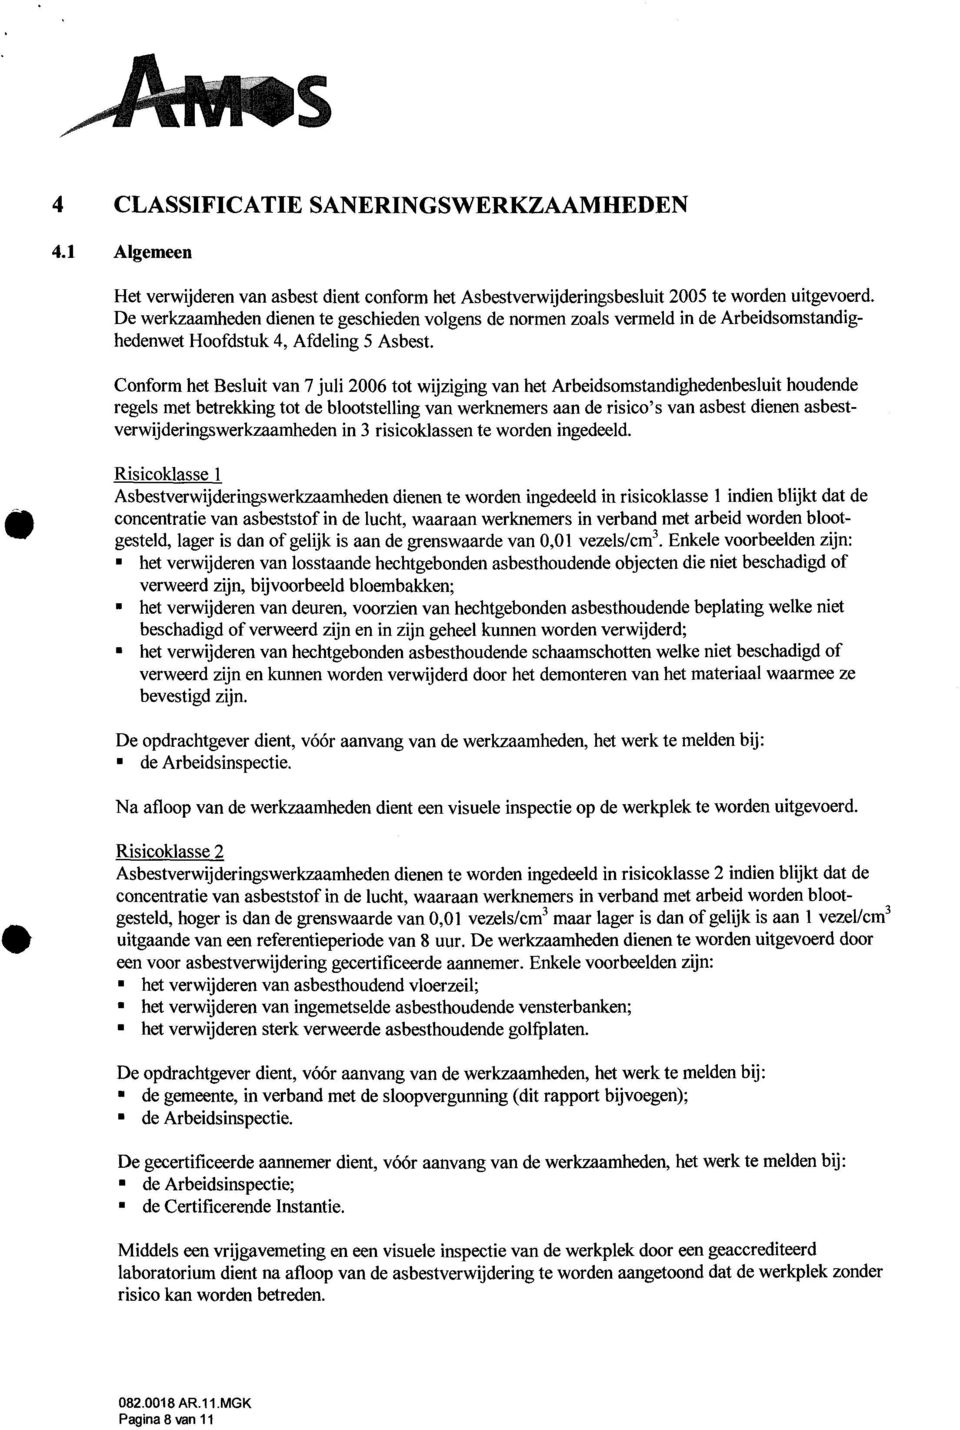 Conform het Besluit van 7 juli 2006 tot wijziging van het Arbeidsomstandighedenbesluit houdende regels met betrekking tot de blootstelling van werknemers aan de risico's van asbest dienen